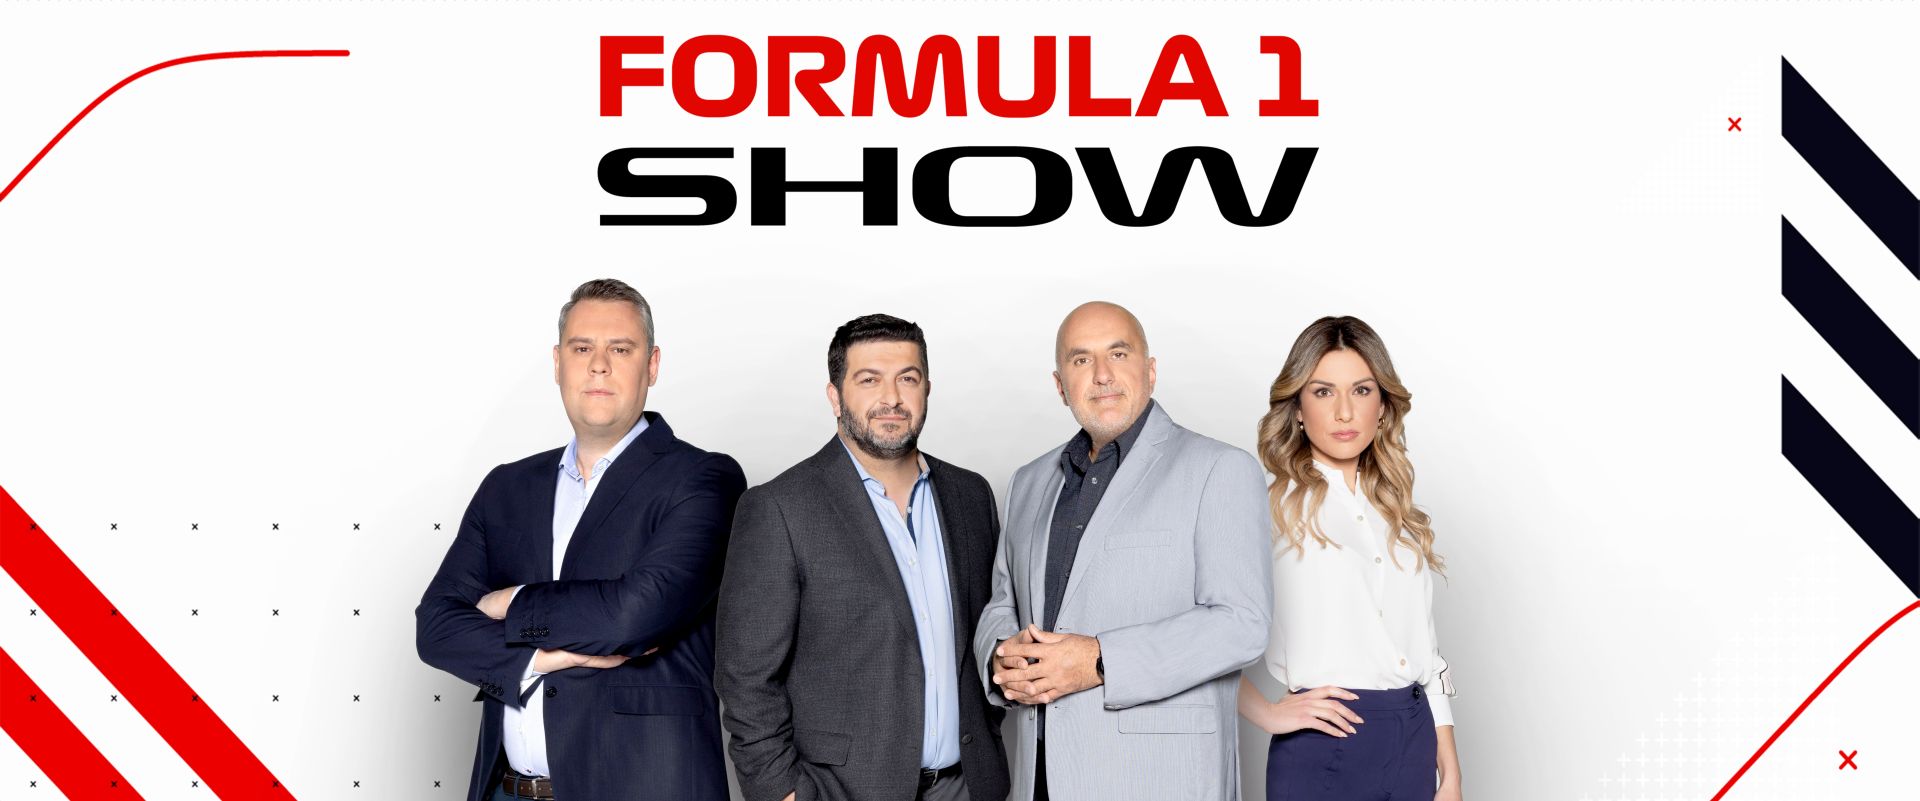 Οι παρουσιαστές του Formula 1 Show